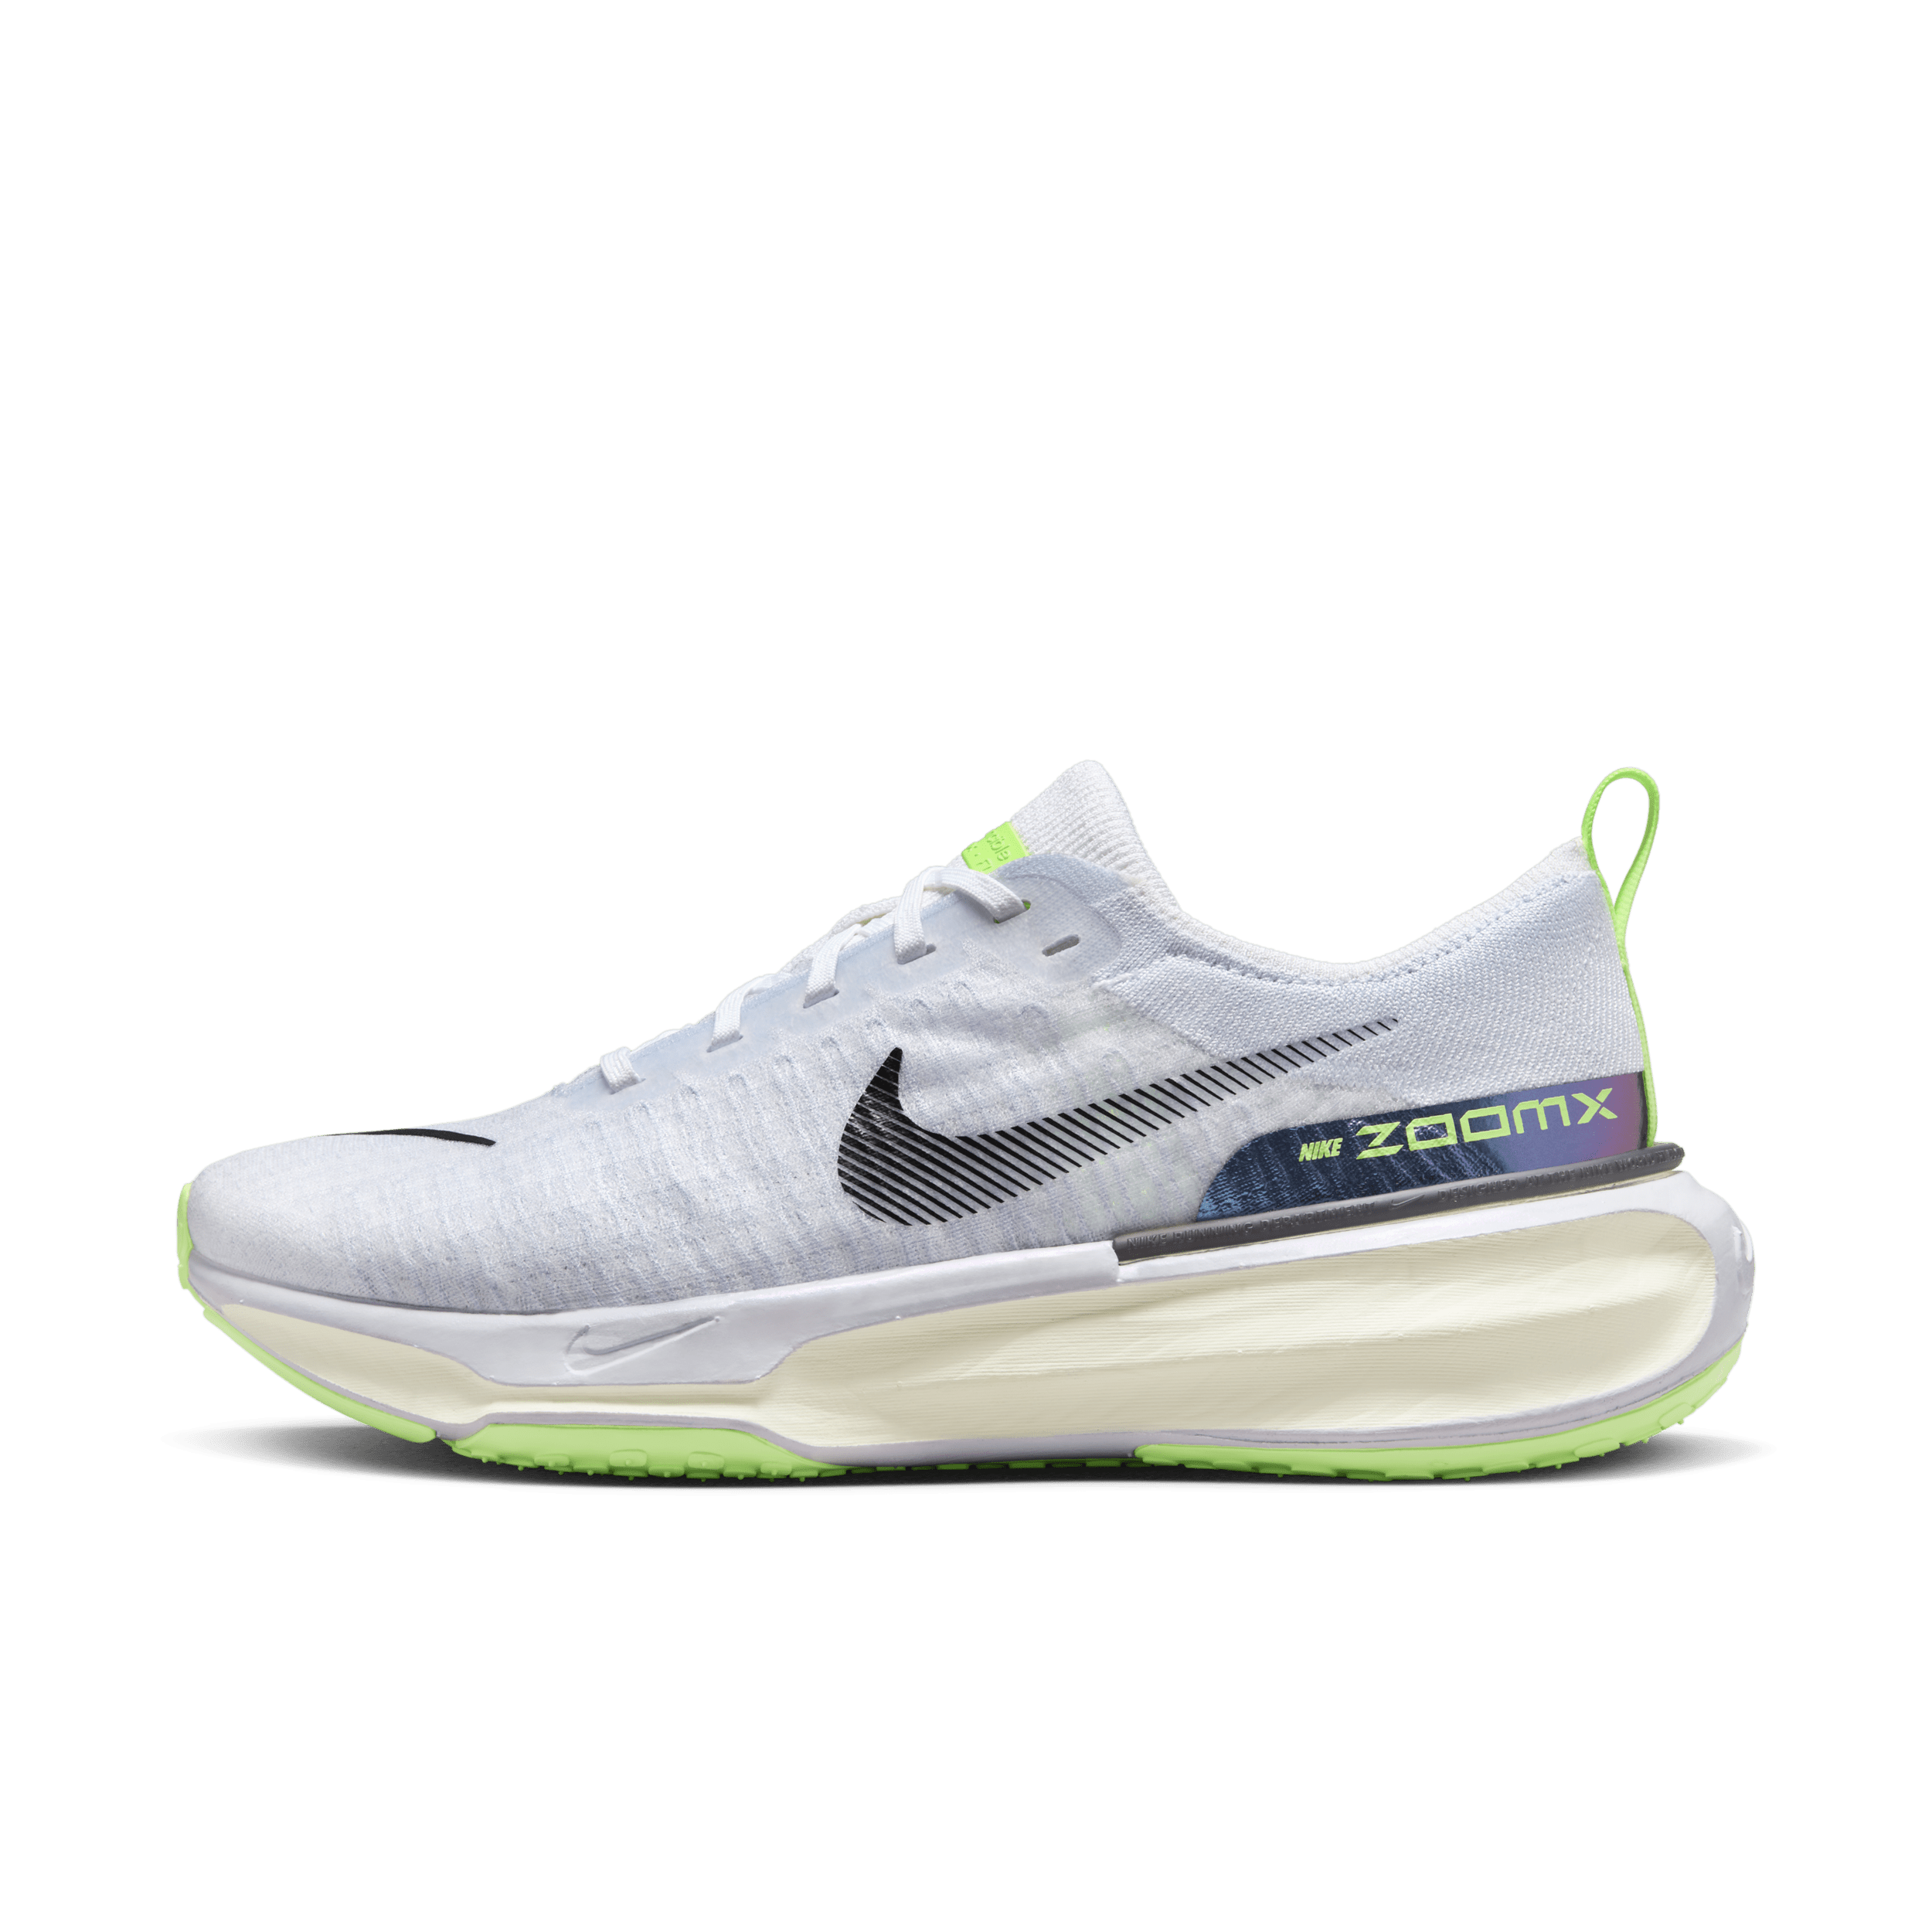 Nike Invincible 3 Zapatillas de running para asfalto - Mujer - Blanco